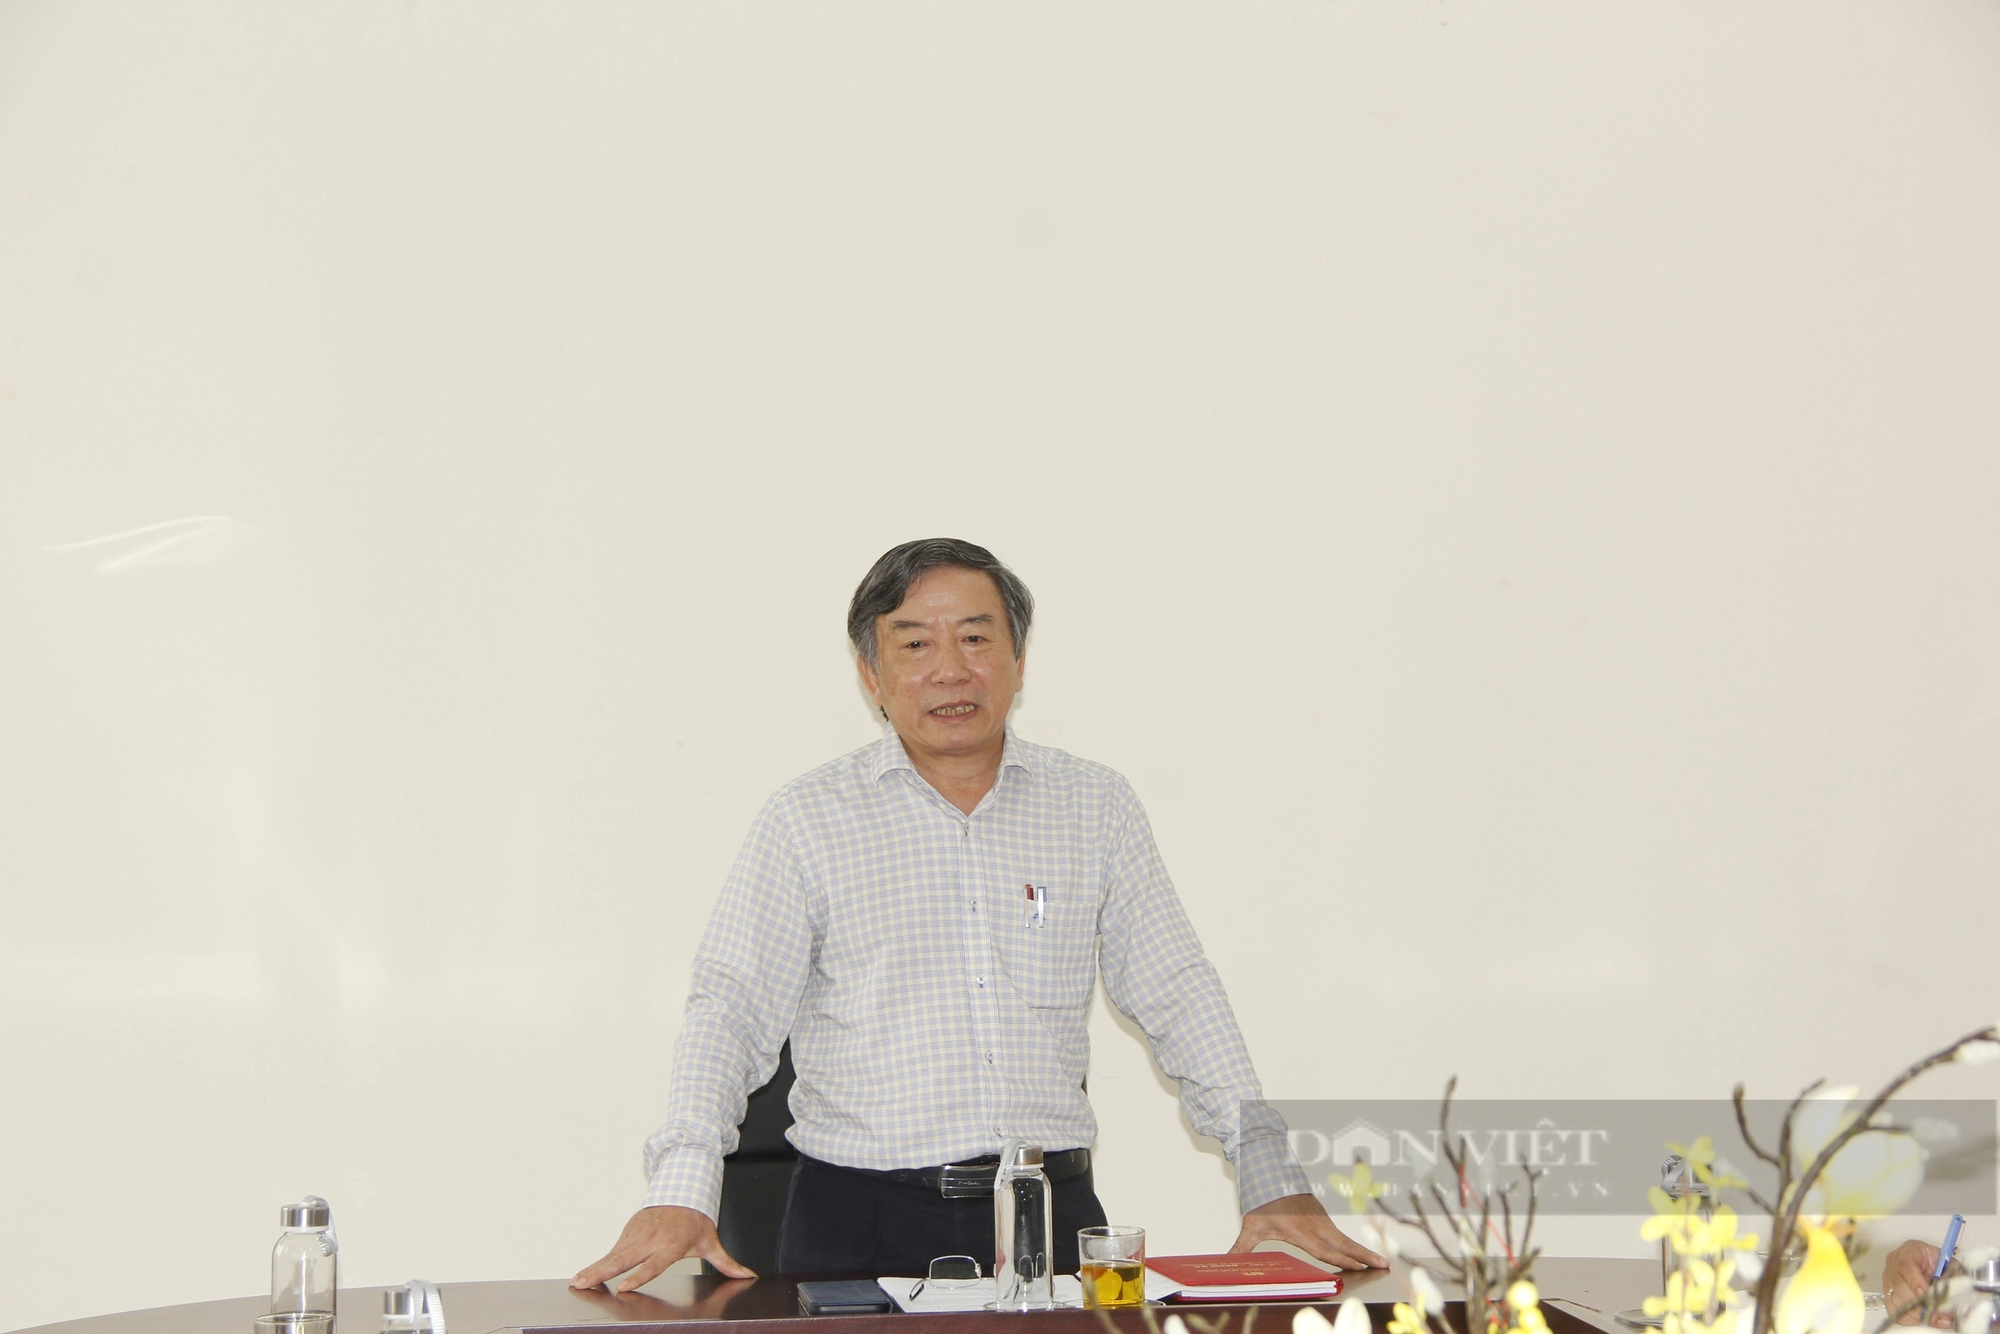 Vụ trại heo xả thải trái phép ở Quảng Trị, chủ trại nói do bất cẩn: Đề xuất UBND tỉnh ra quyết định xử phạt- Ảnh 4.